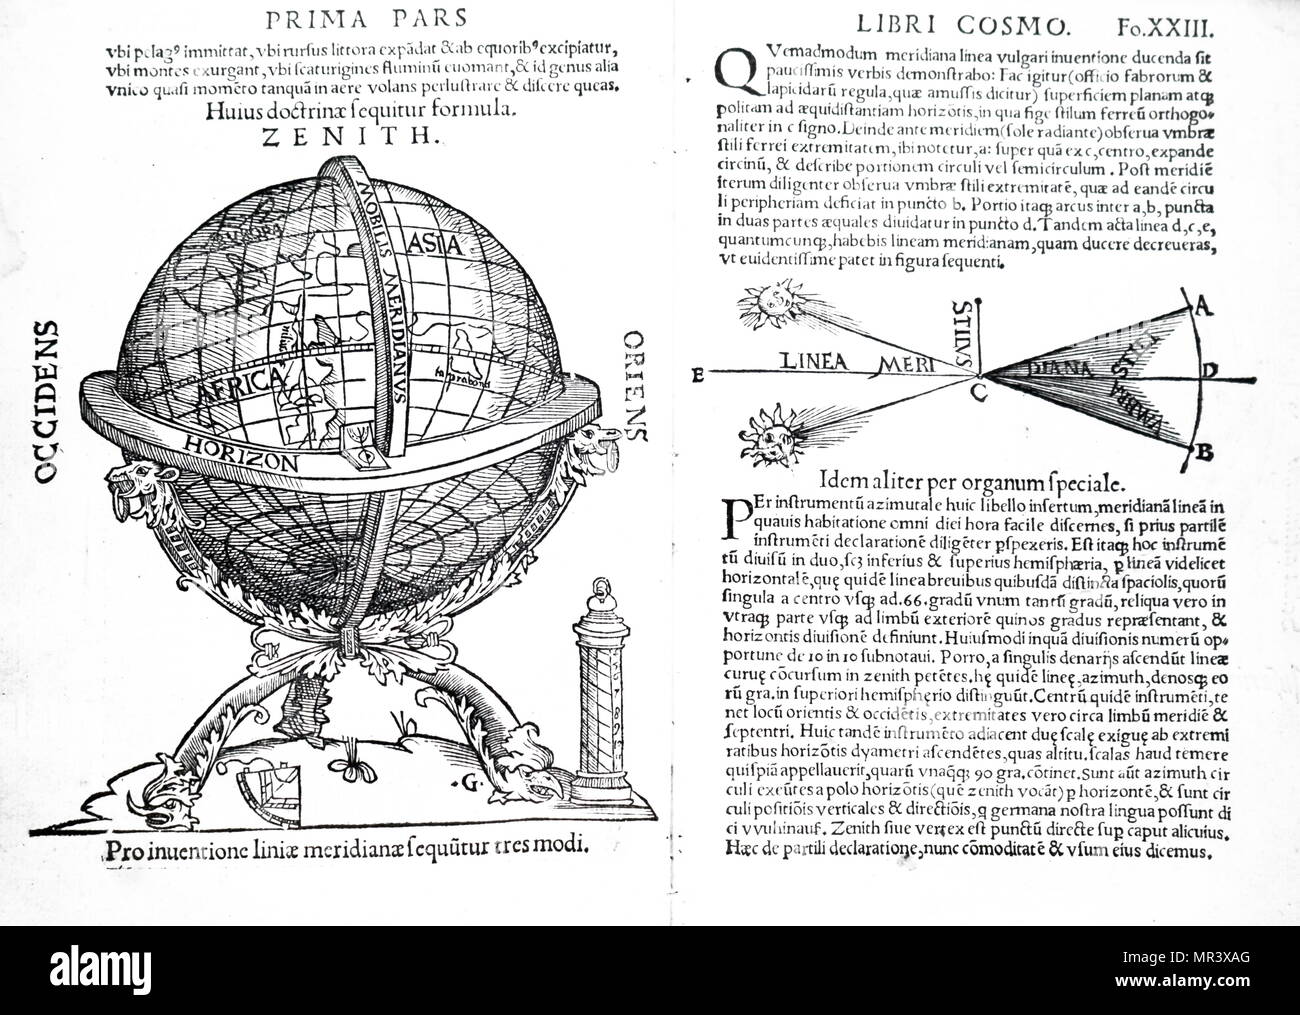 Diffusione da Petrus Apiano Cosmographiia". Petrus Apiano (1495-1552) un umanista tedesco, noto per le sue opere in matematica, astronomia e cartografia. Datata xvi secolo Foto Stock